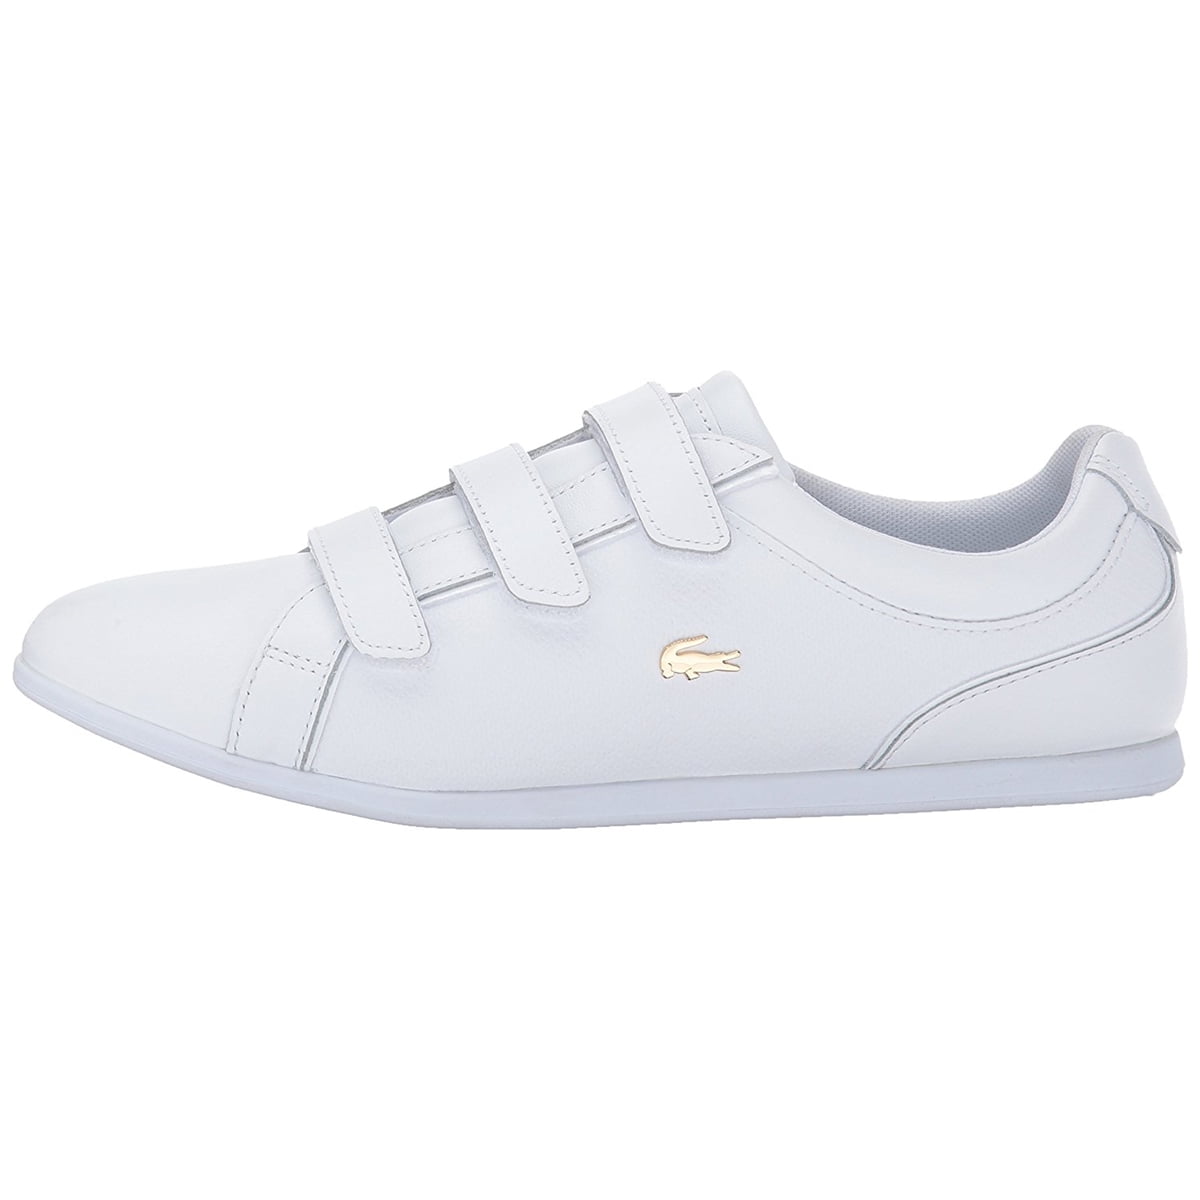 Lacoste Women Rey Strap 317 Caw Fashion Sneakers -